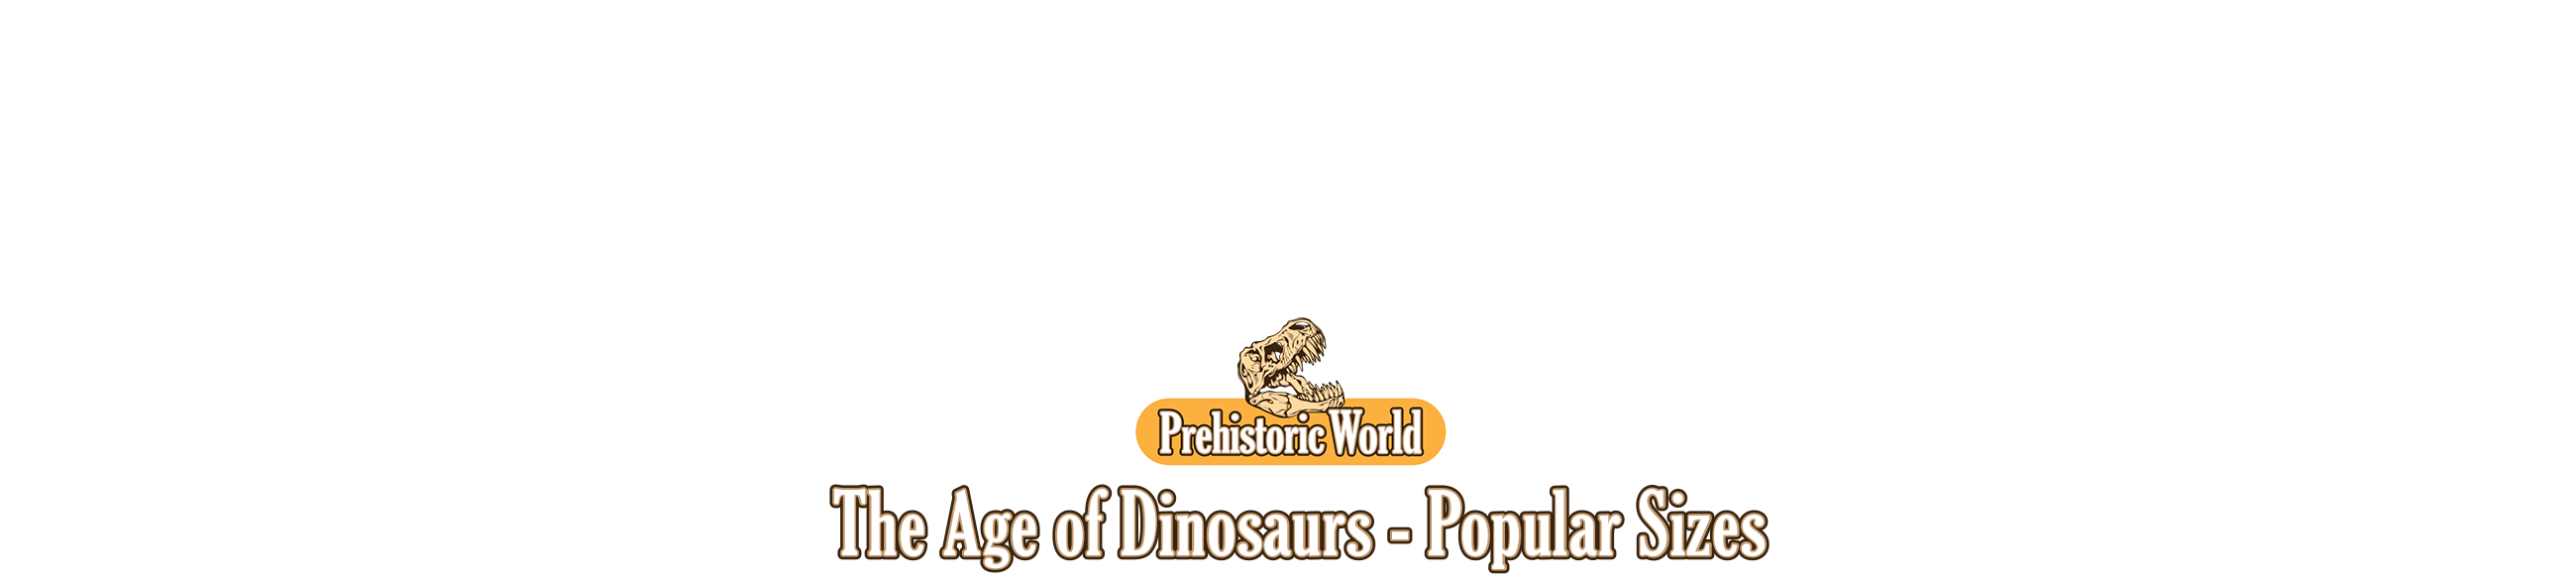 La Era de los Dinosauios Popular